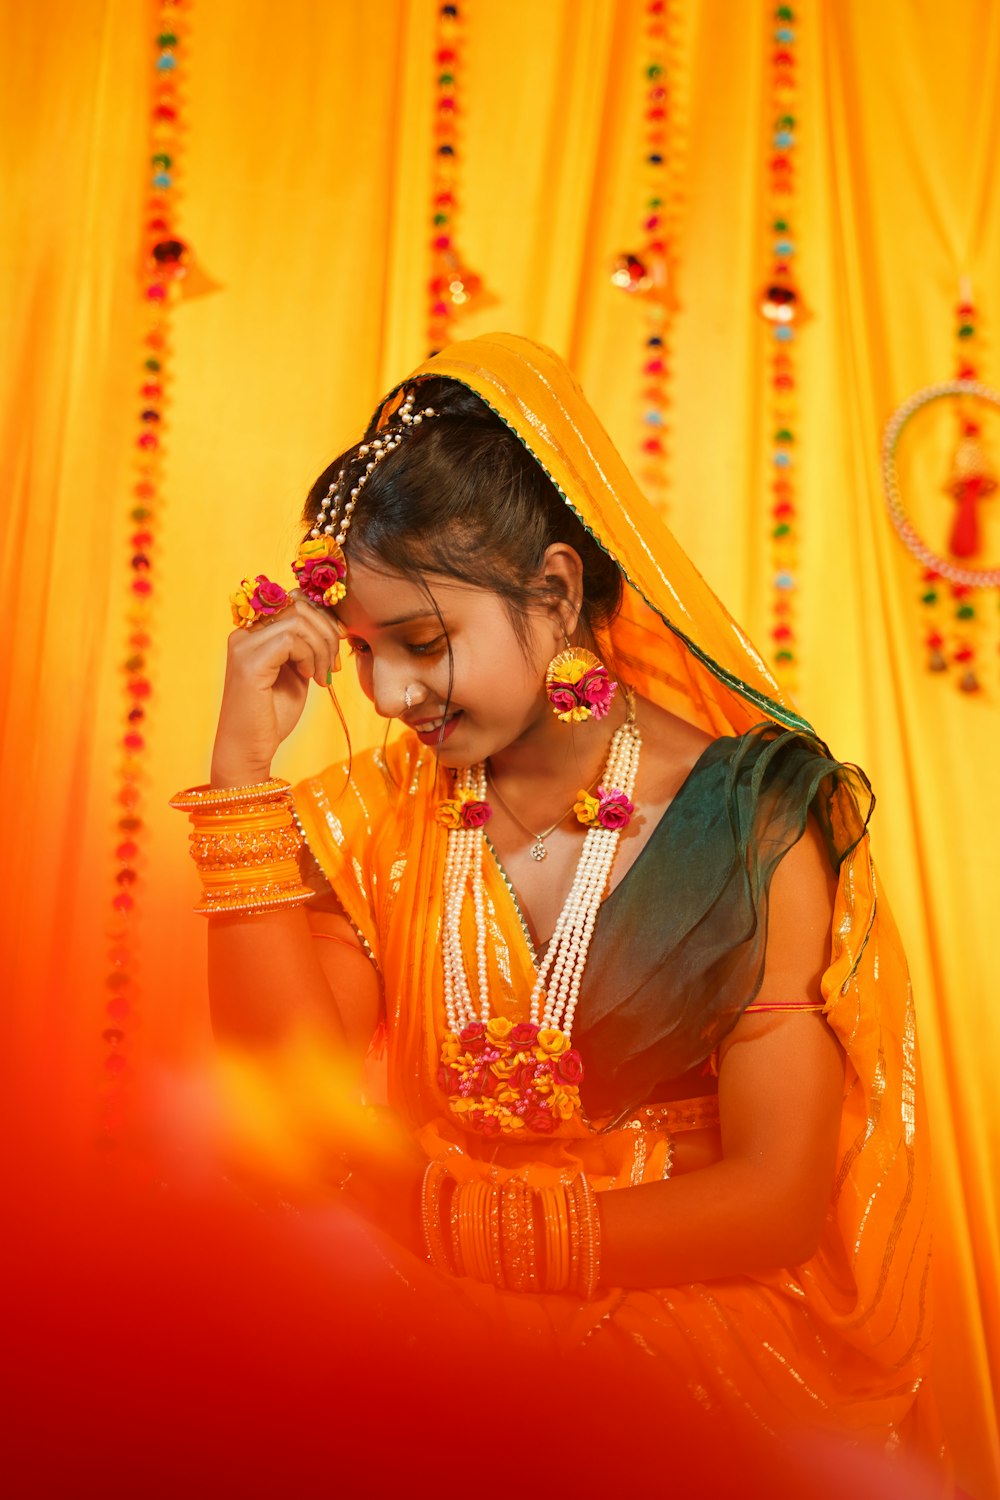 Uma jovem vestida com um traje tradicional indiano